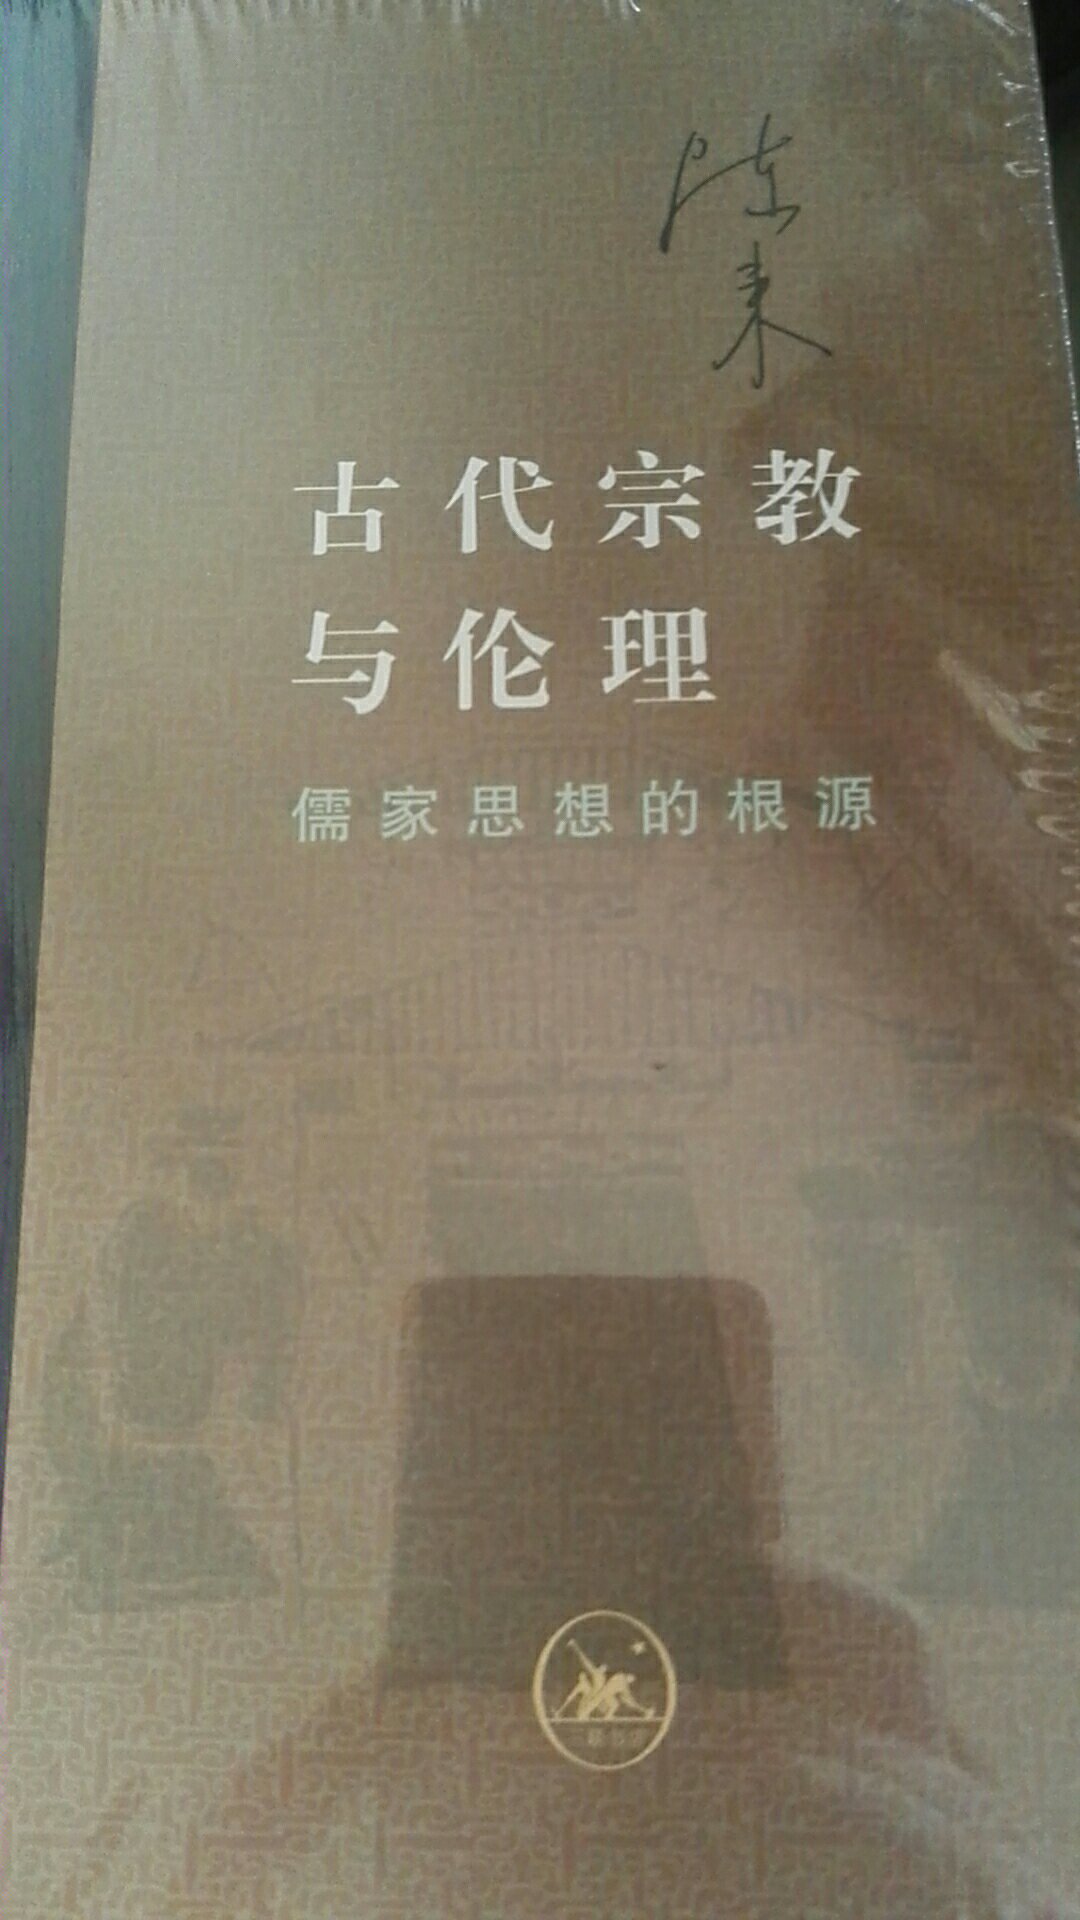 当代学术丛书，本书探讨儒家思想的根源，讲述古代@与伦理。